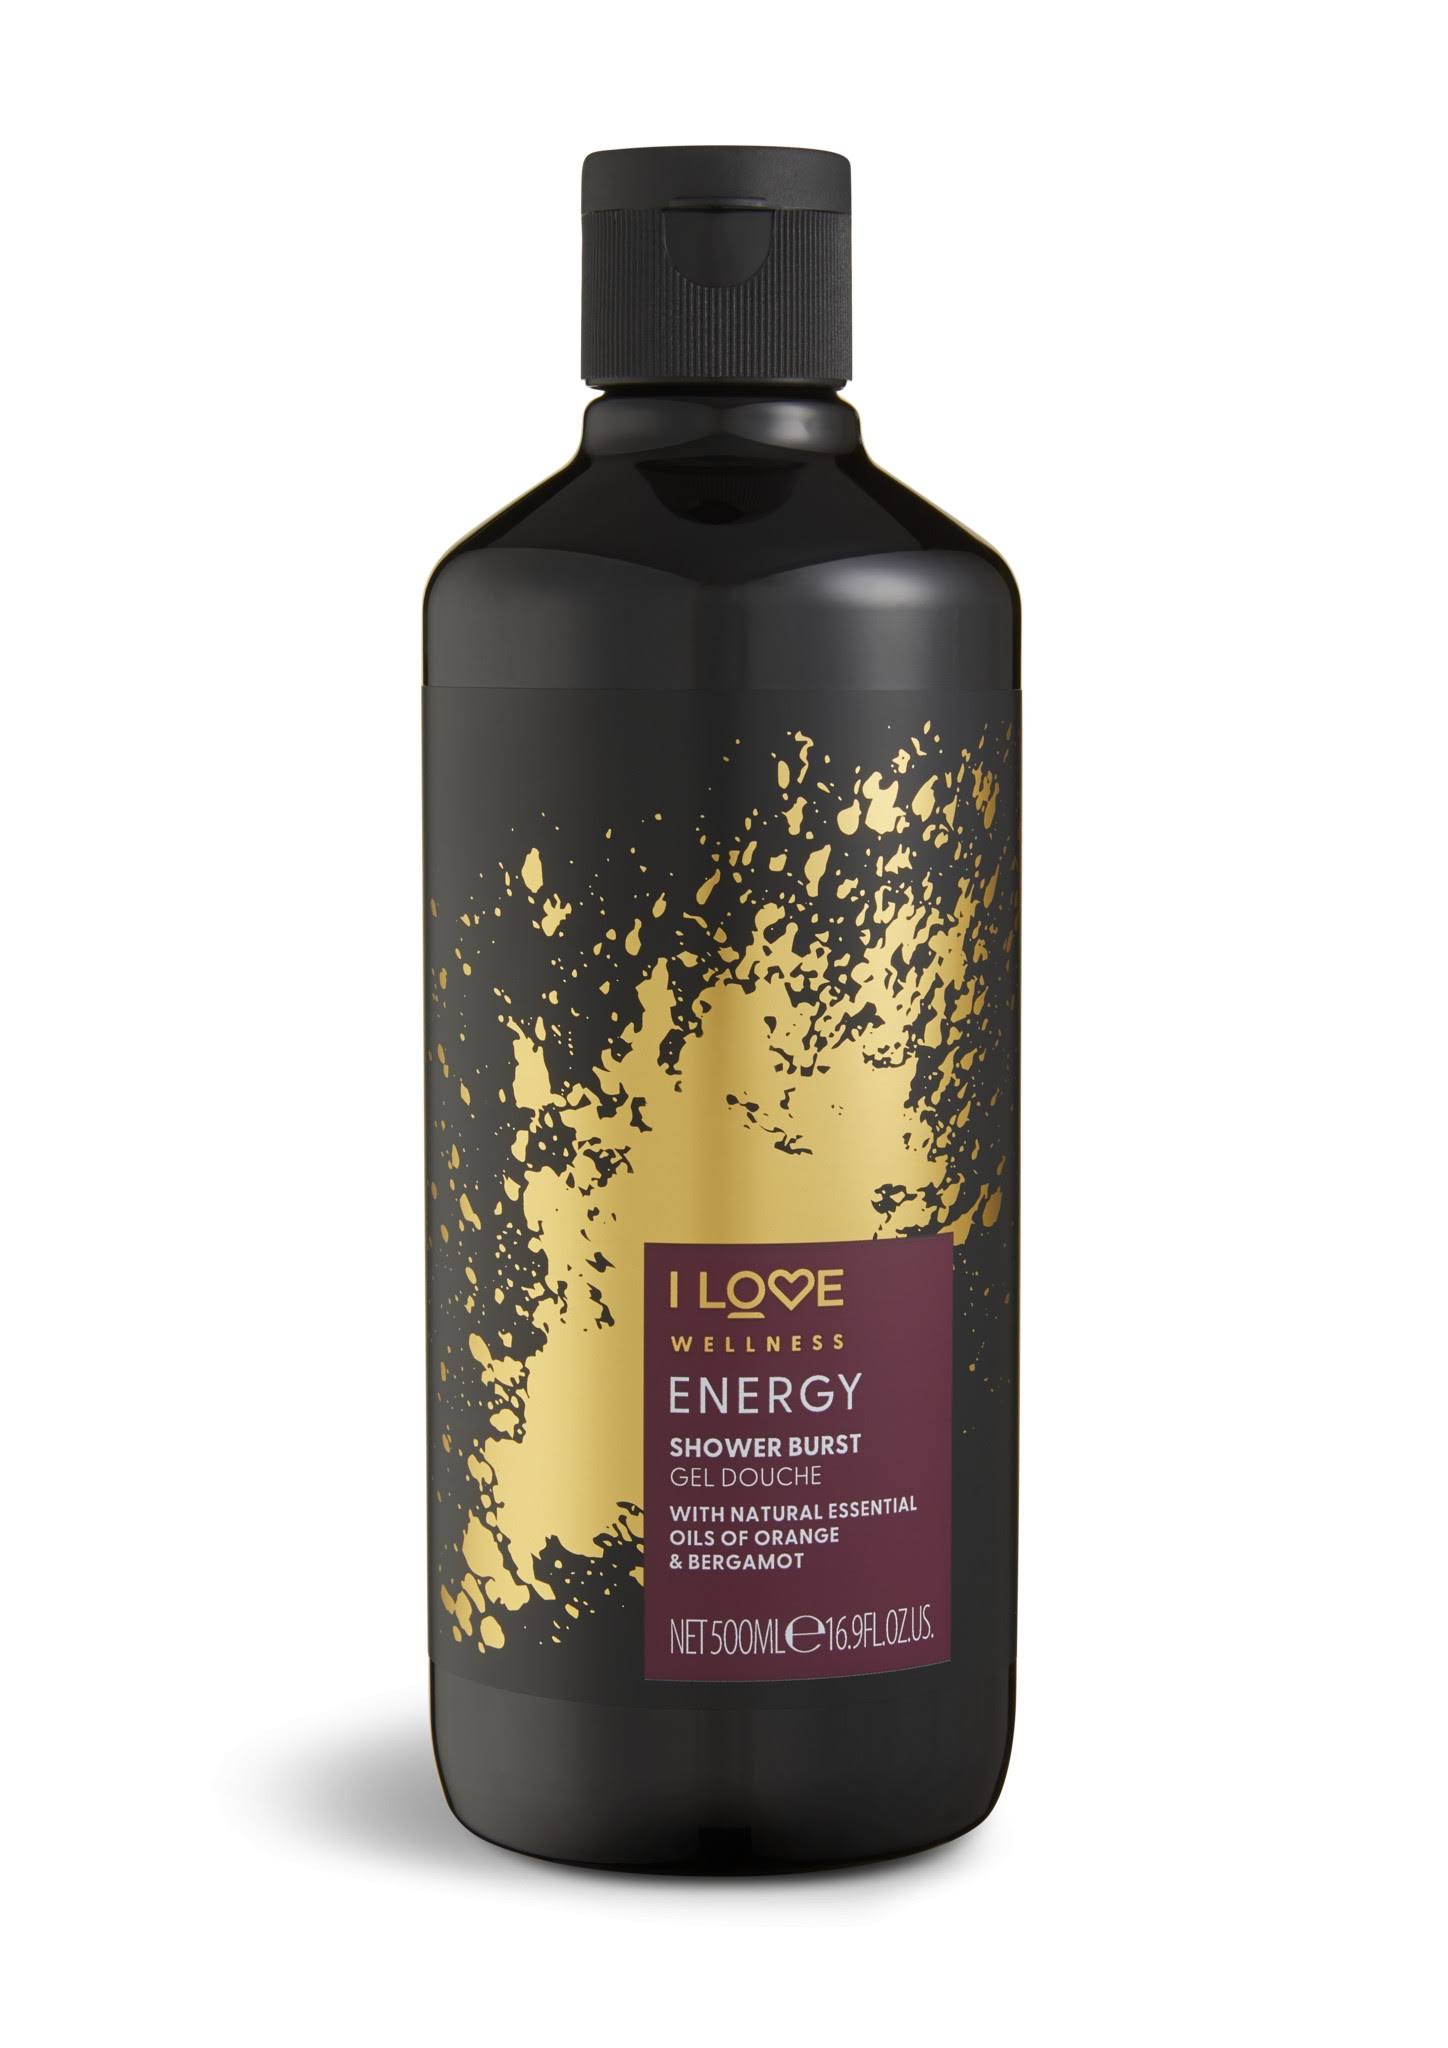 I Love Wellness Shower Burst Energy 500.0 mL